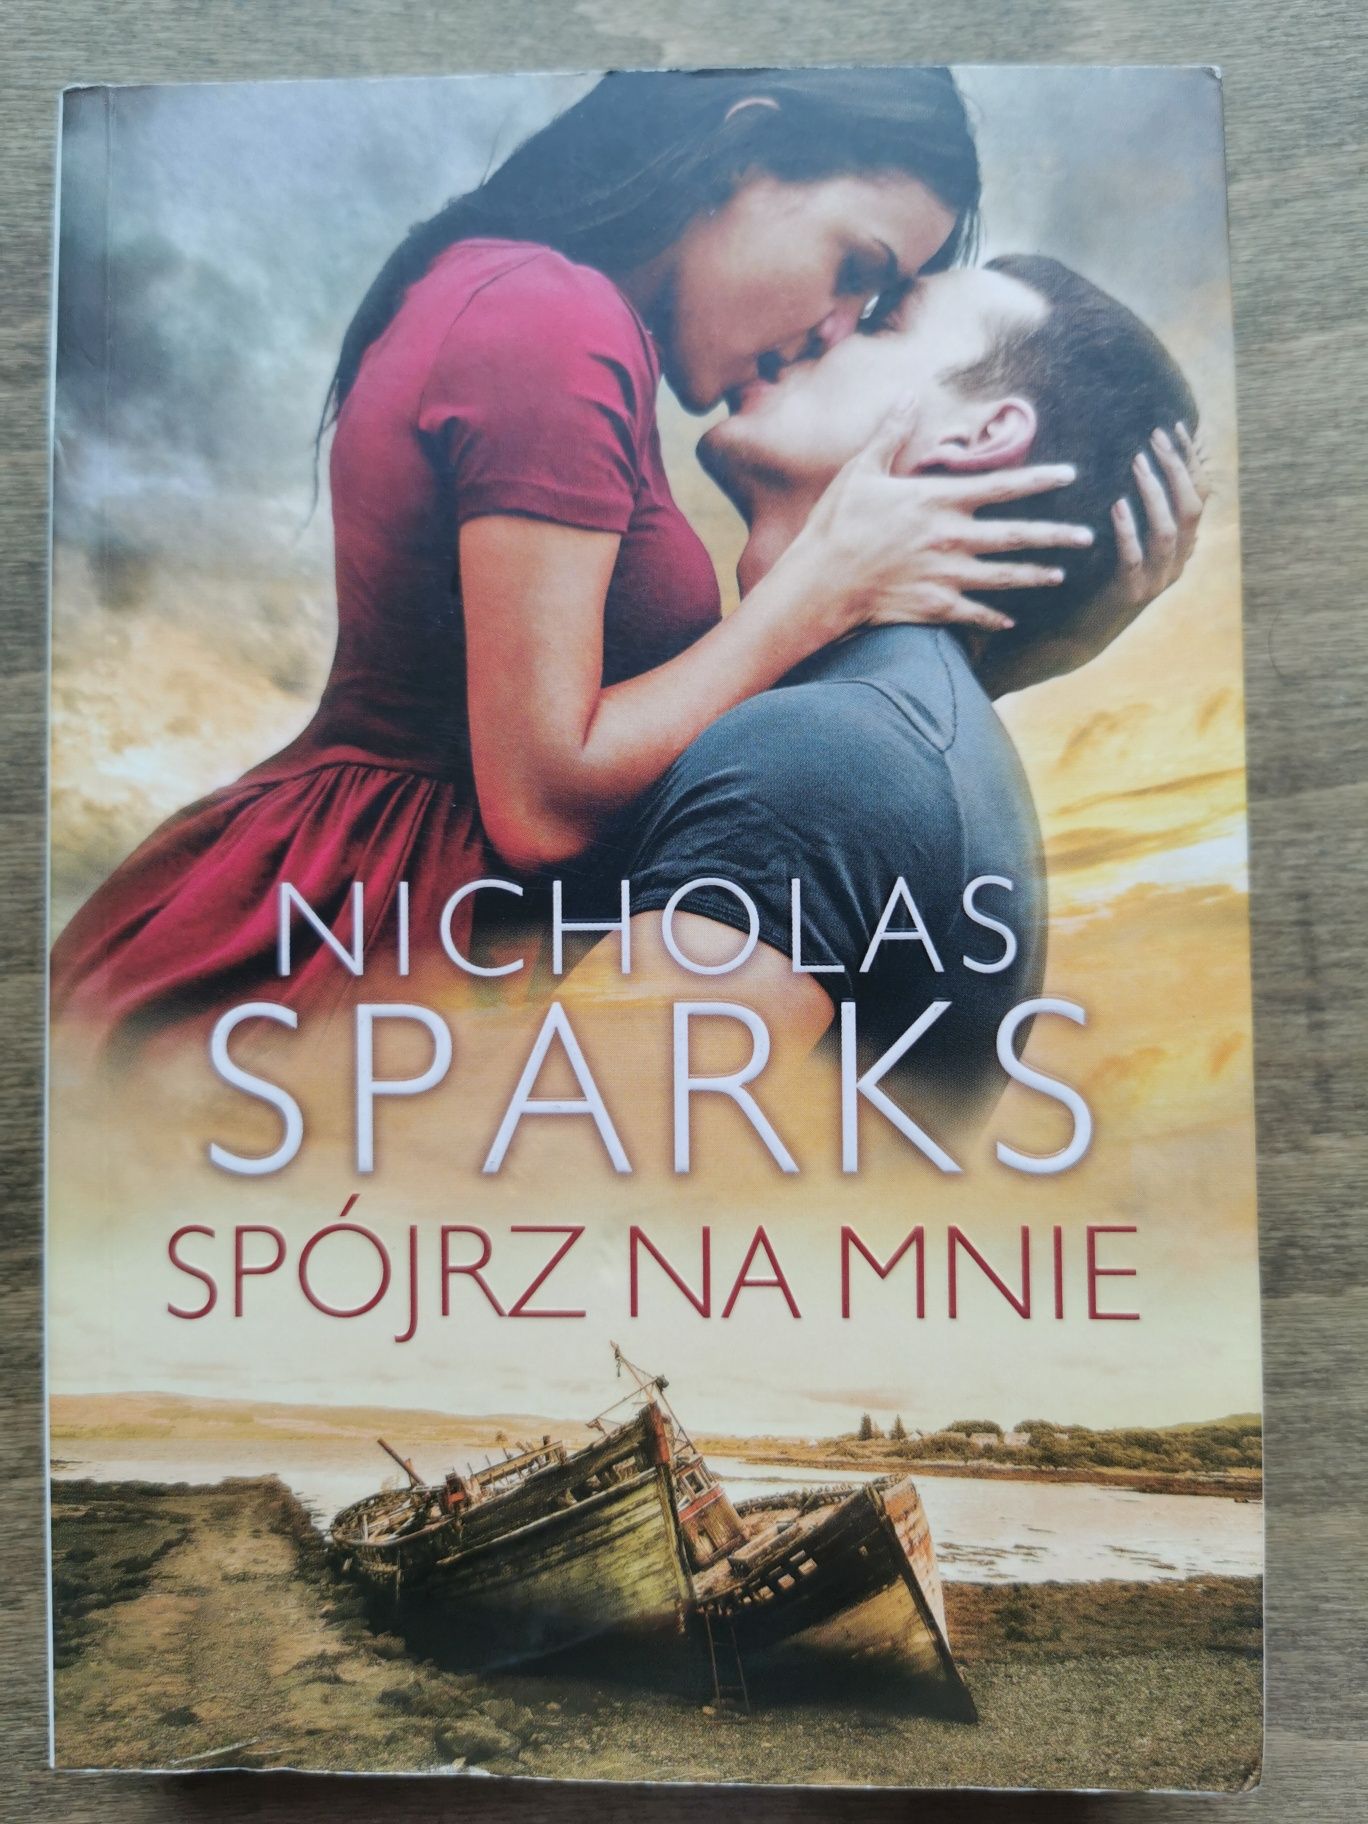 Spójrz na mnie Nicholas Sparks